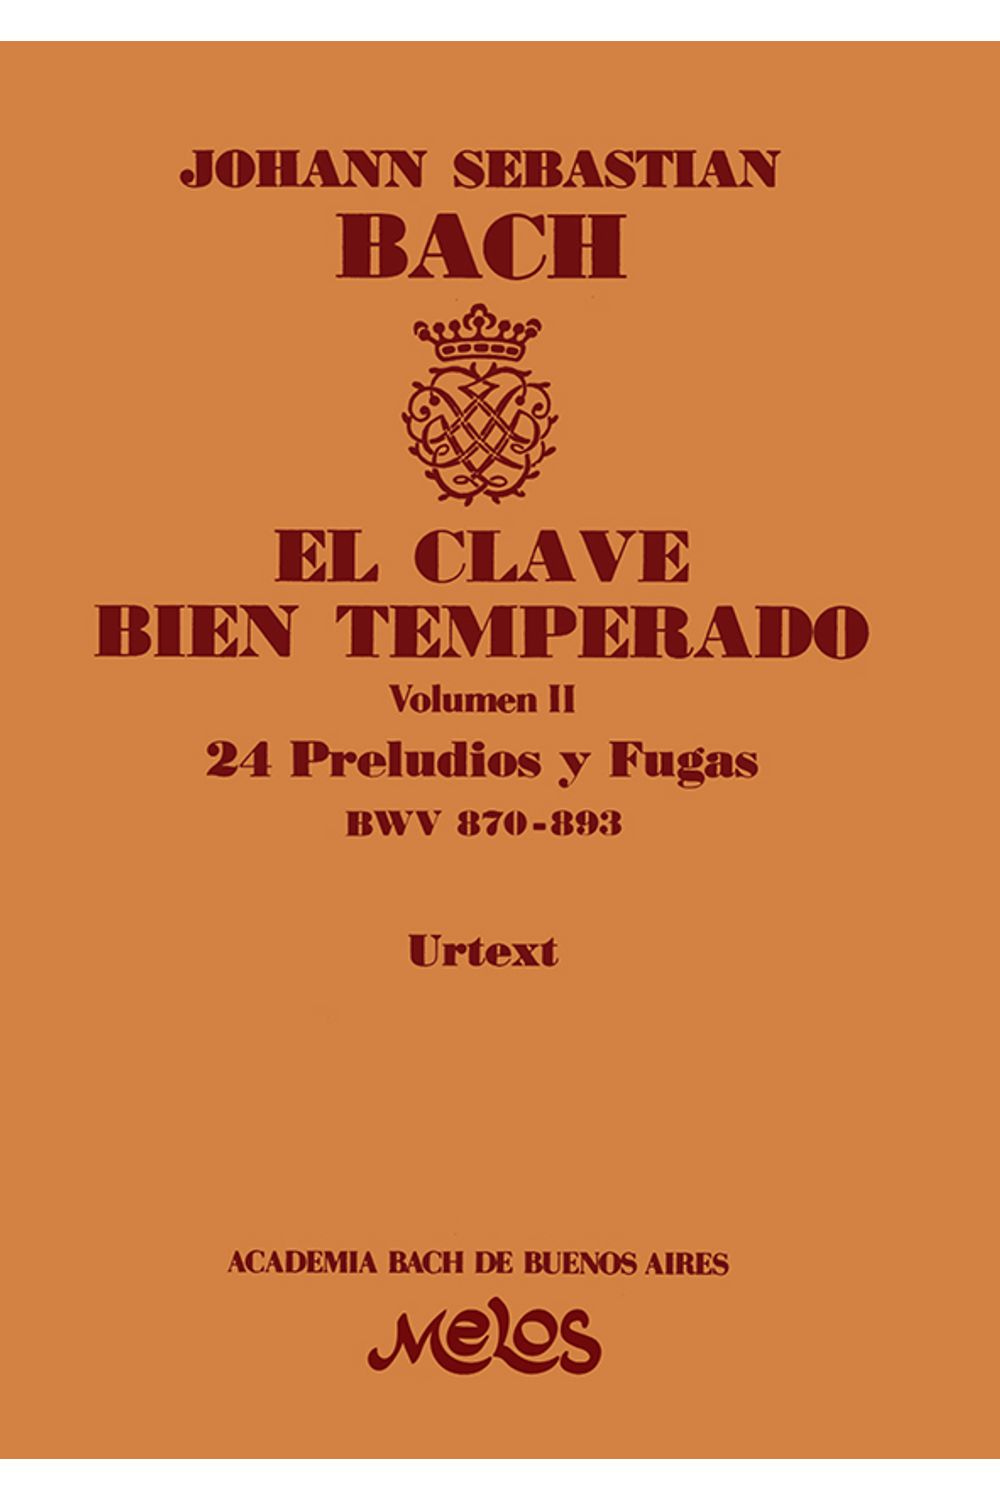 bm-ba13394-el-clave-bien-temperado-volumen-2-melos-ediciones-musicales-9790698830294